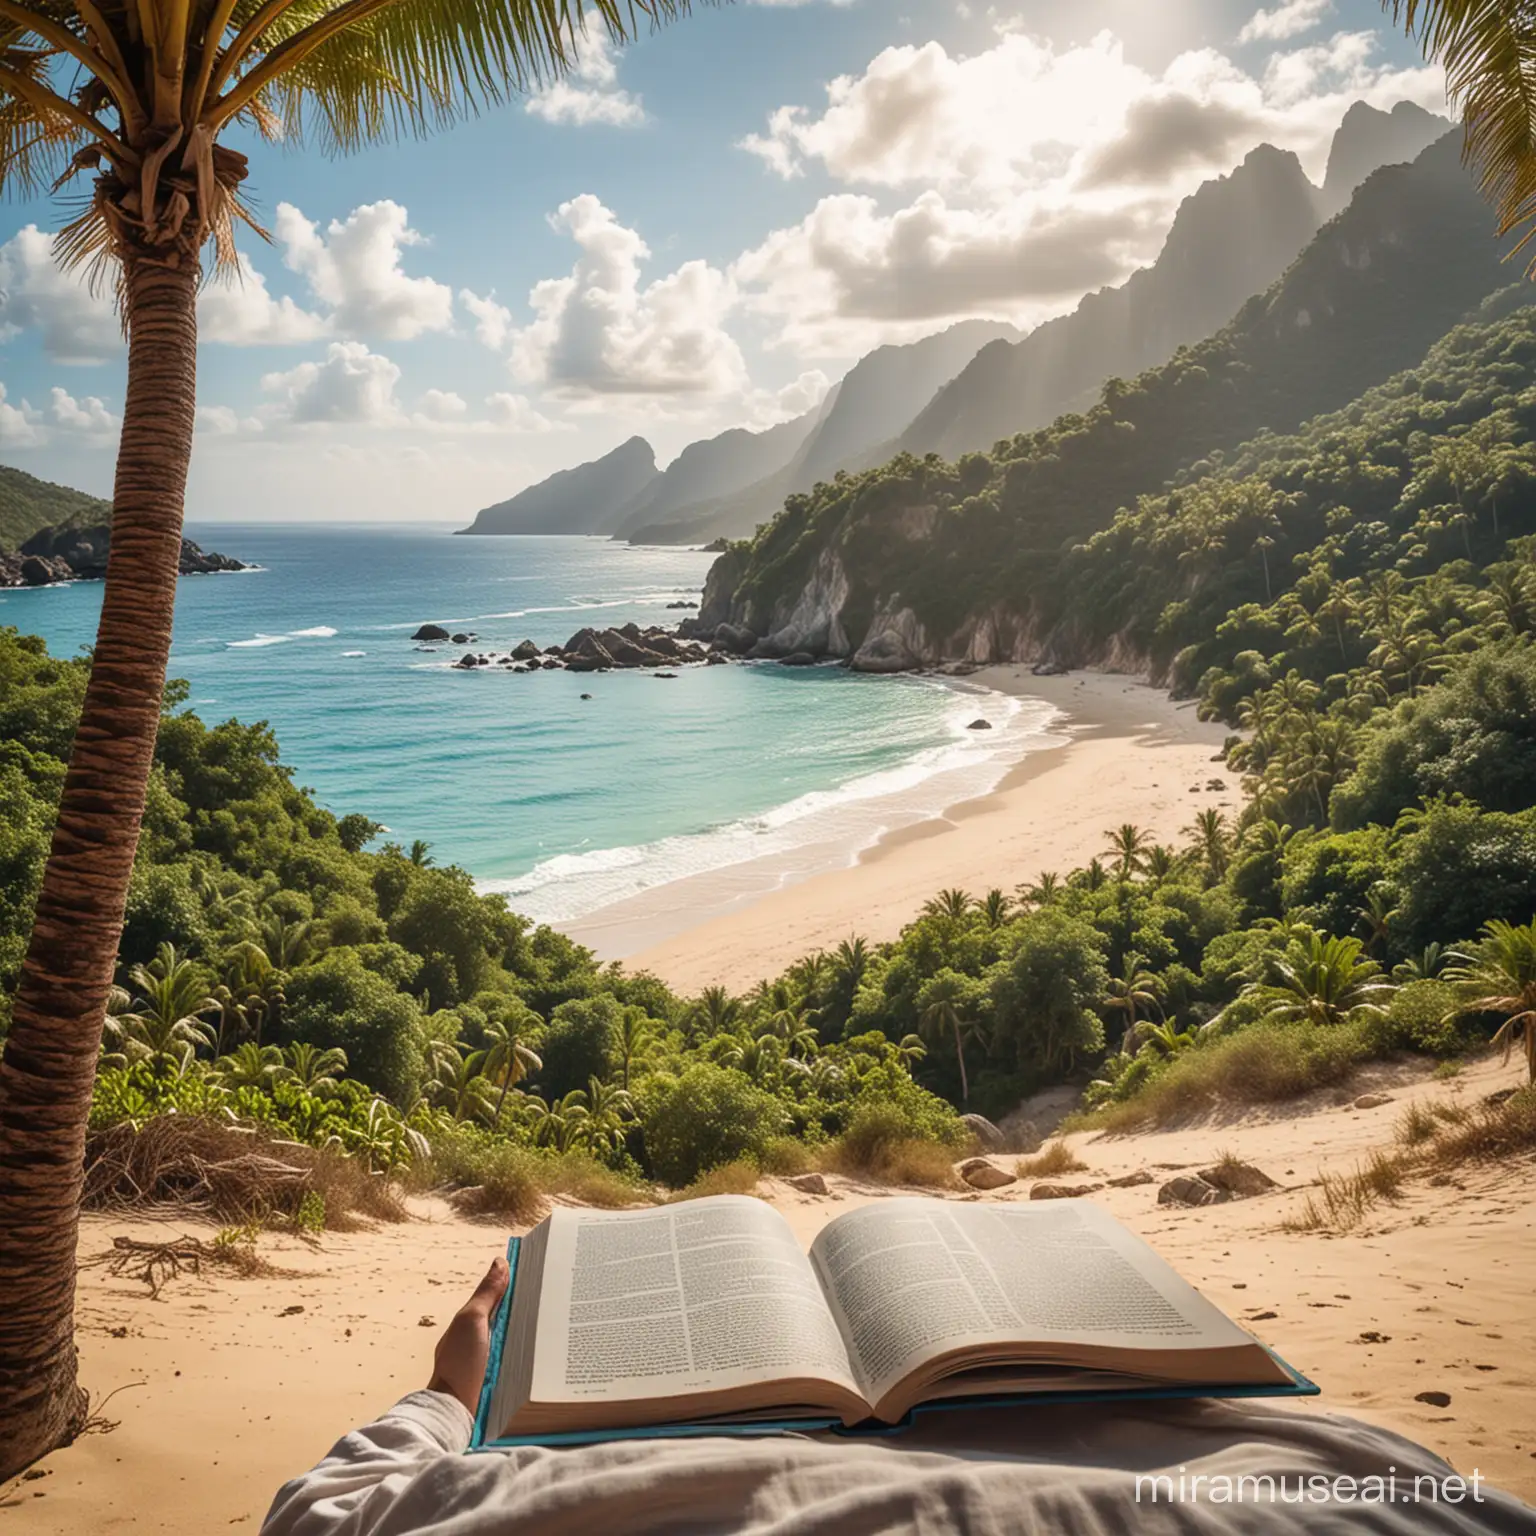 Una imagen de una persona leyendo un libro en un lugar exótico, como en una playa paradisíaca o en medio de un paisaje montañoso impresionante.